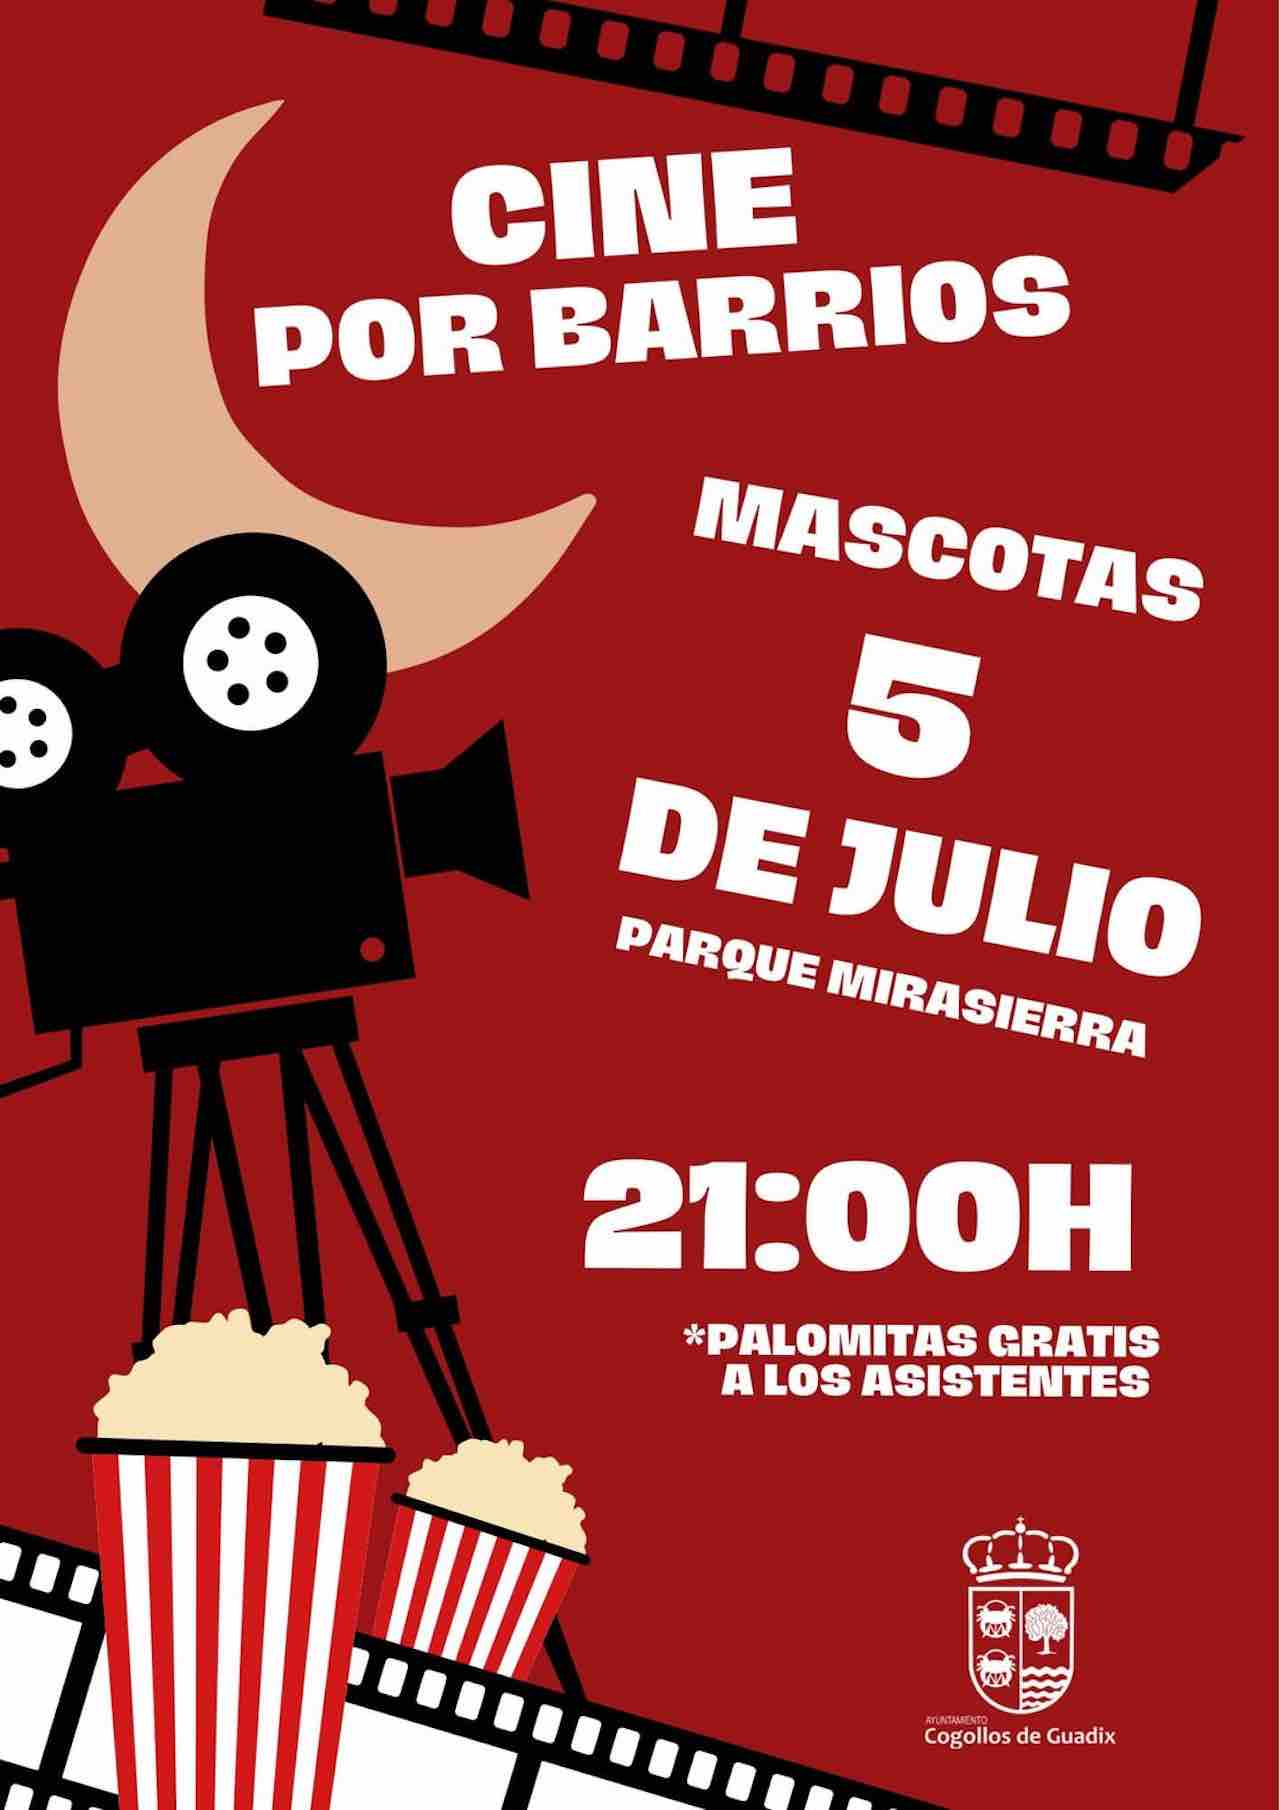 Cine de verano, “Cine por barrios” en Cogollos de Guadix